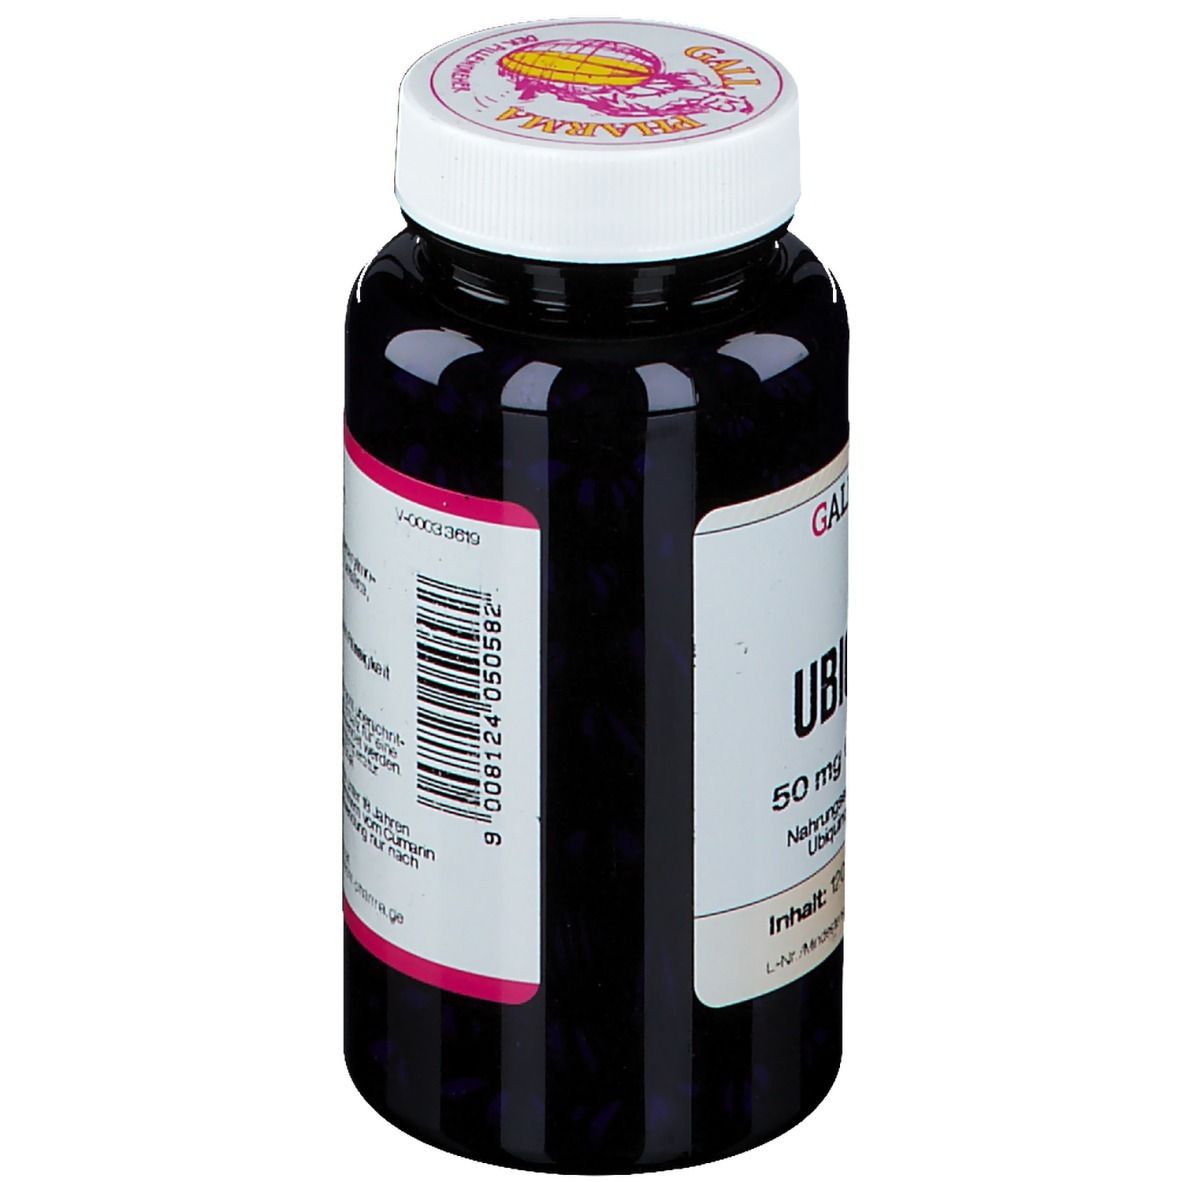 GALL PHARMA Ubiquinol 50 mg GPH